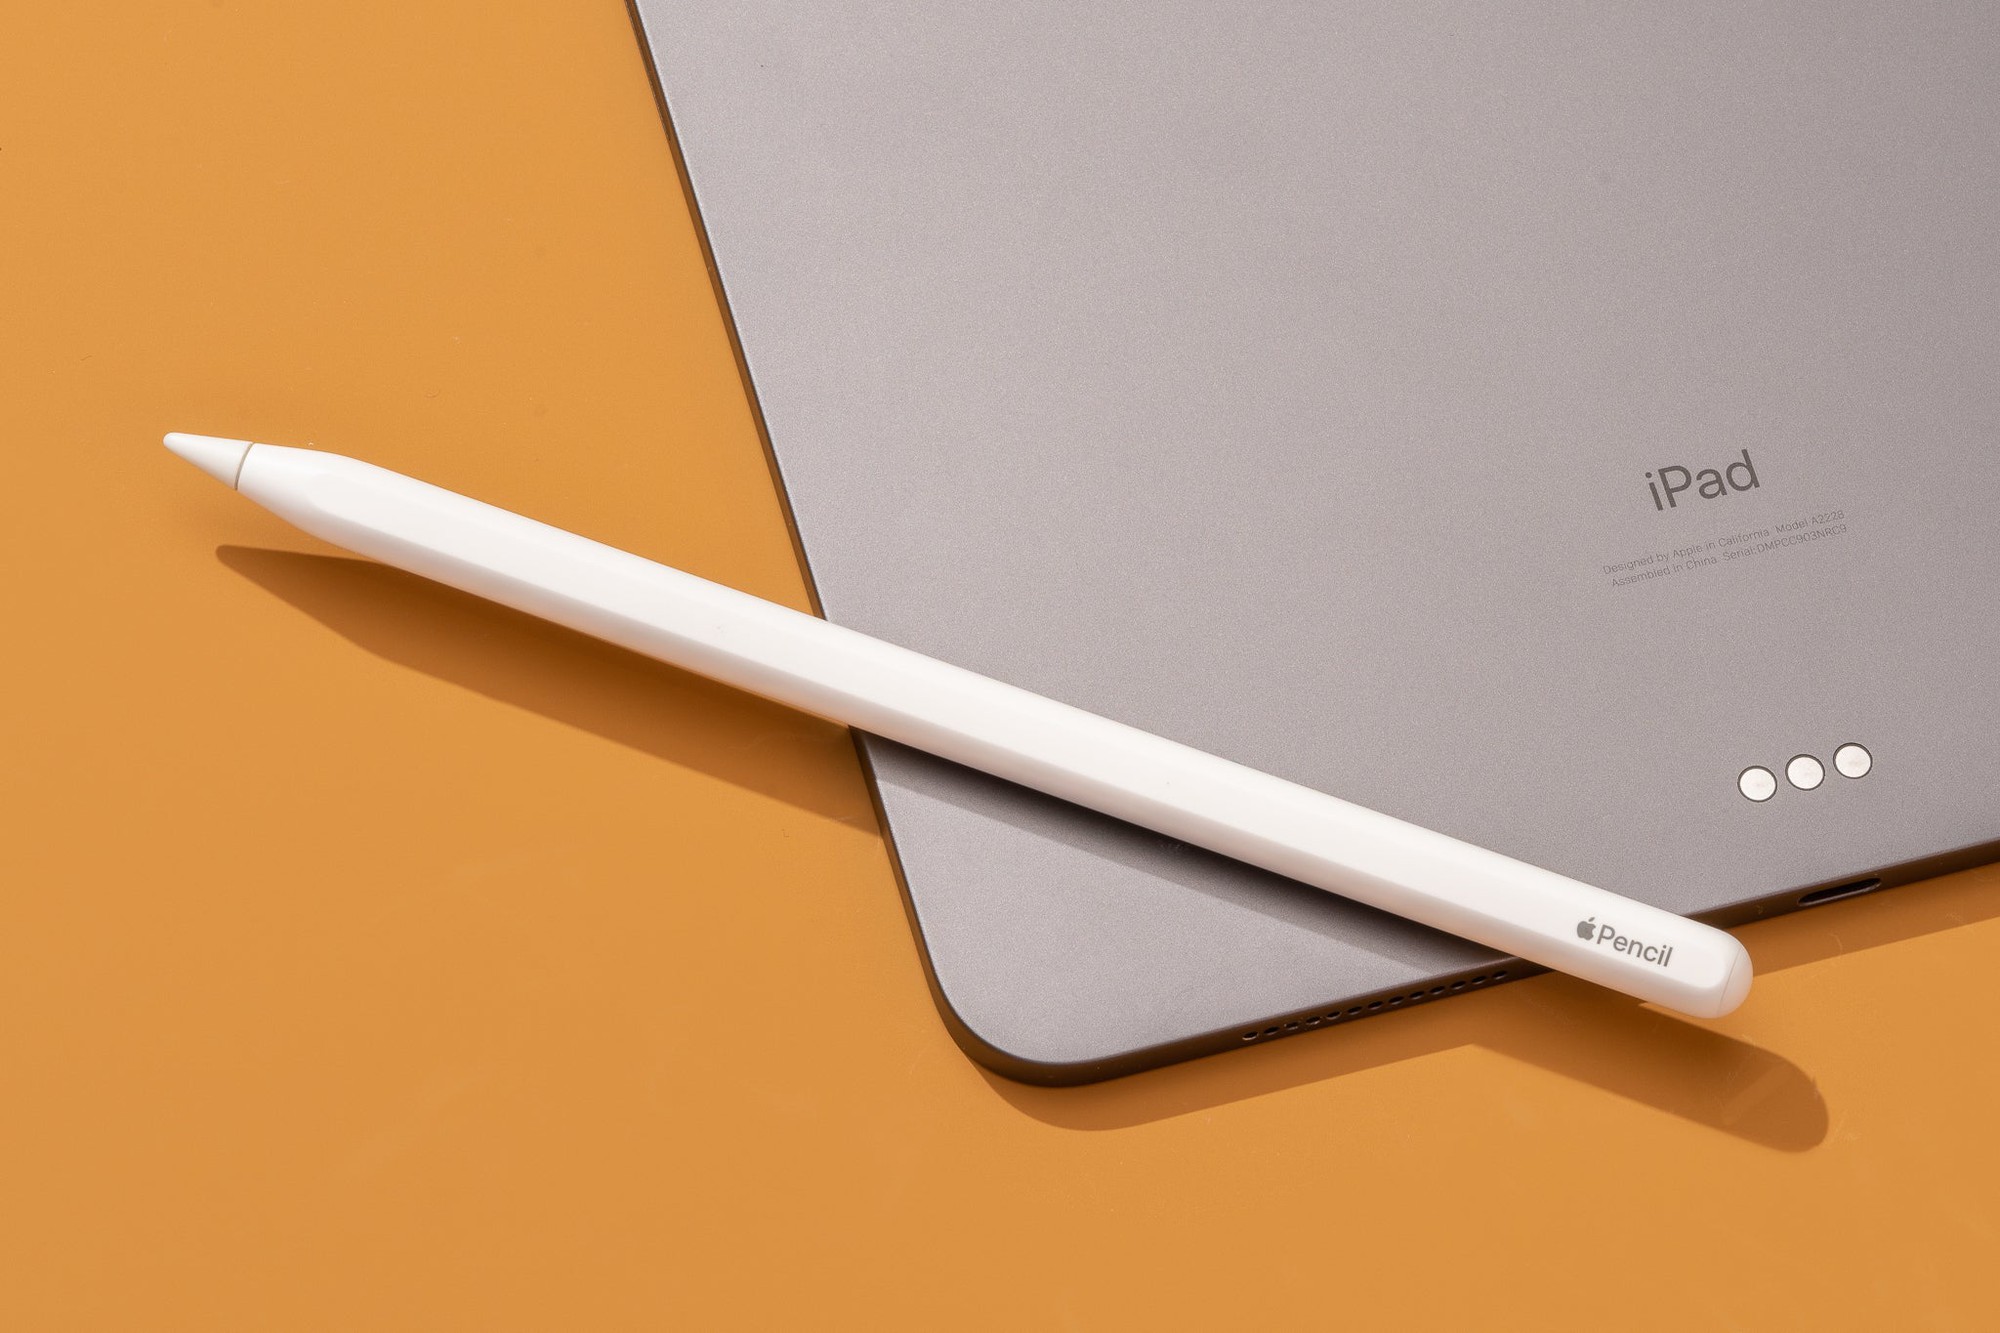 Có nên mua Apple Pencil để dùng với iPad?